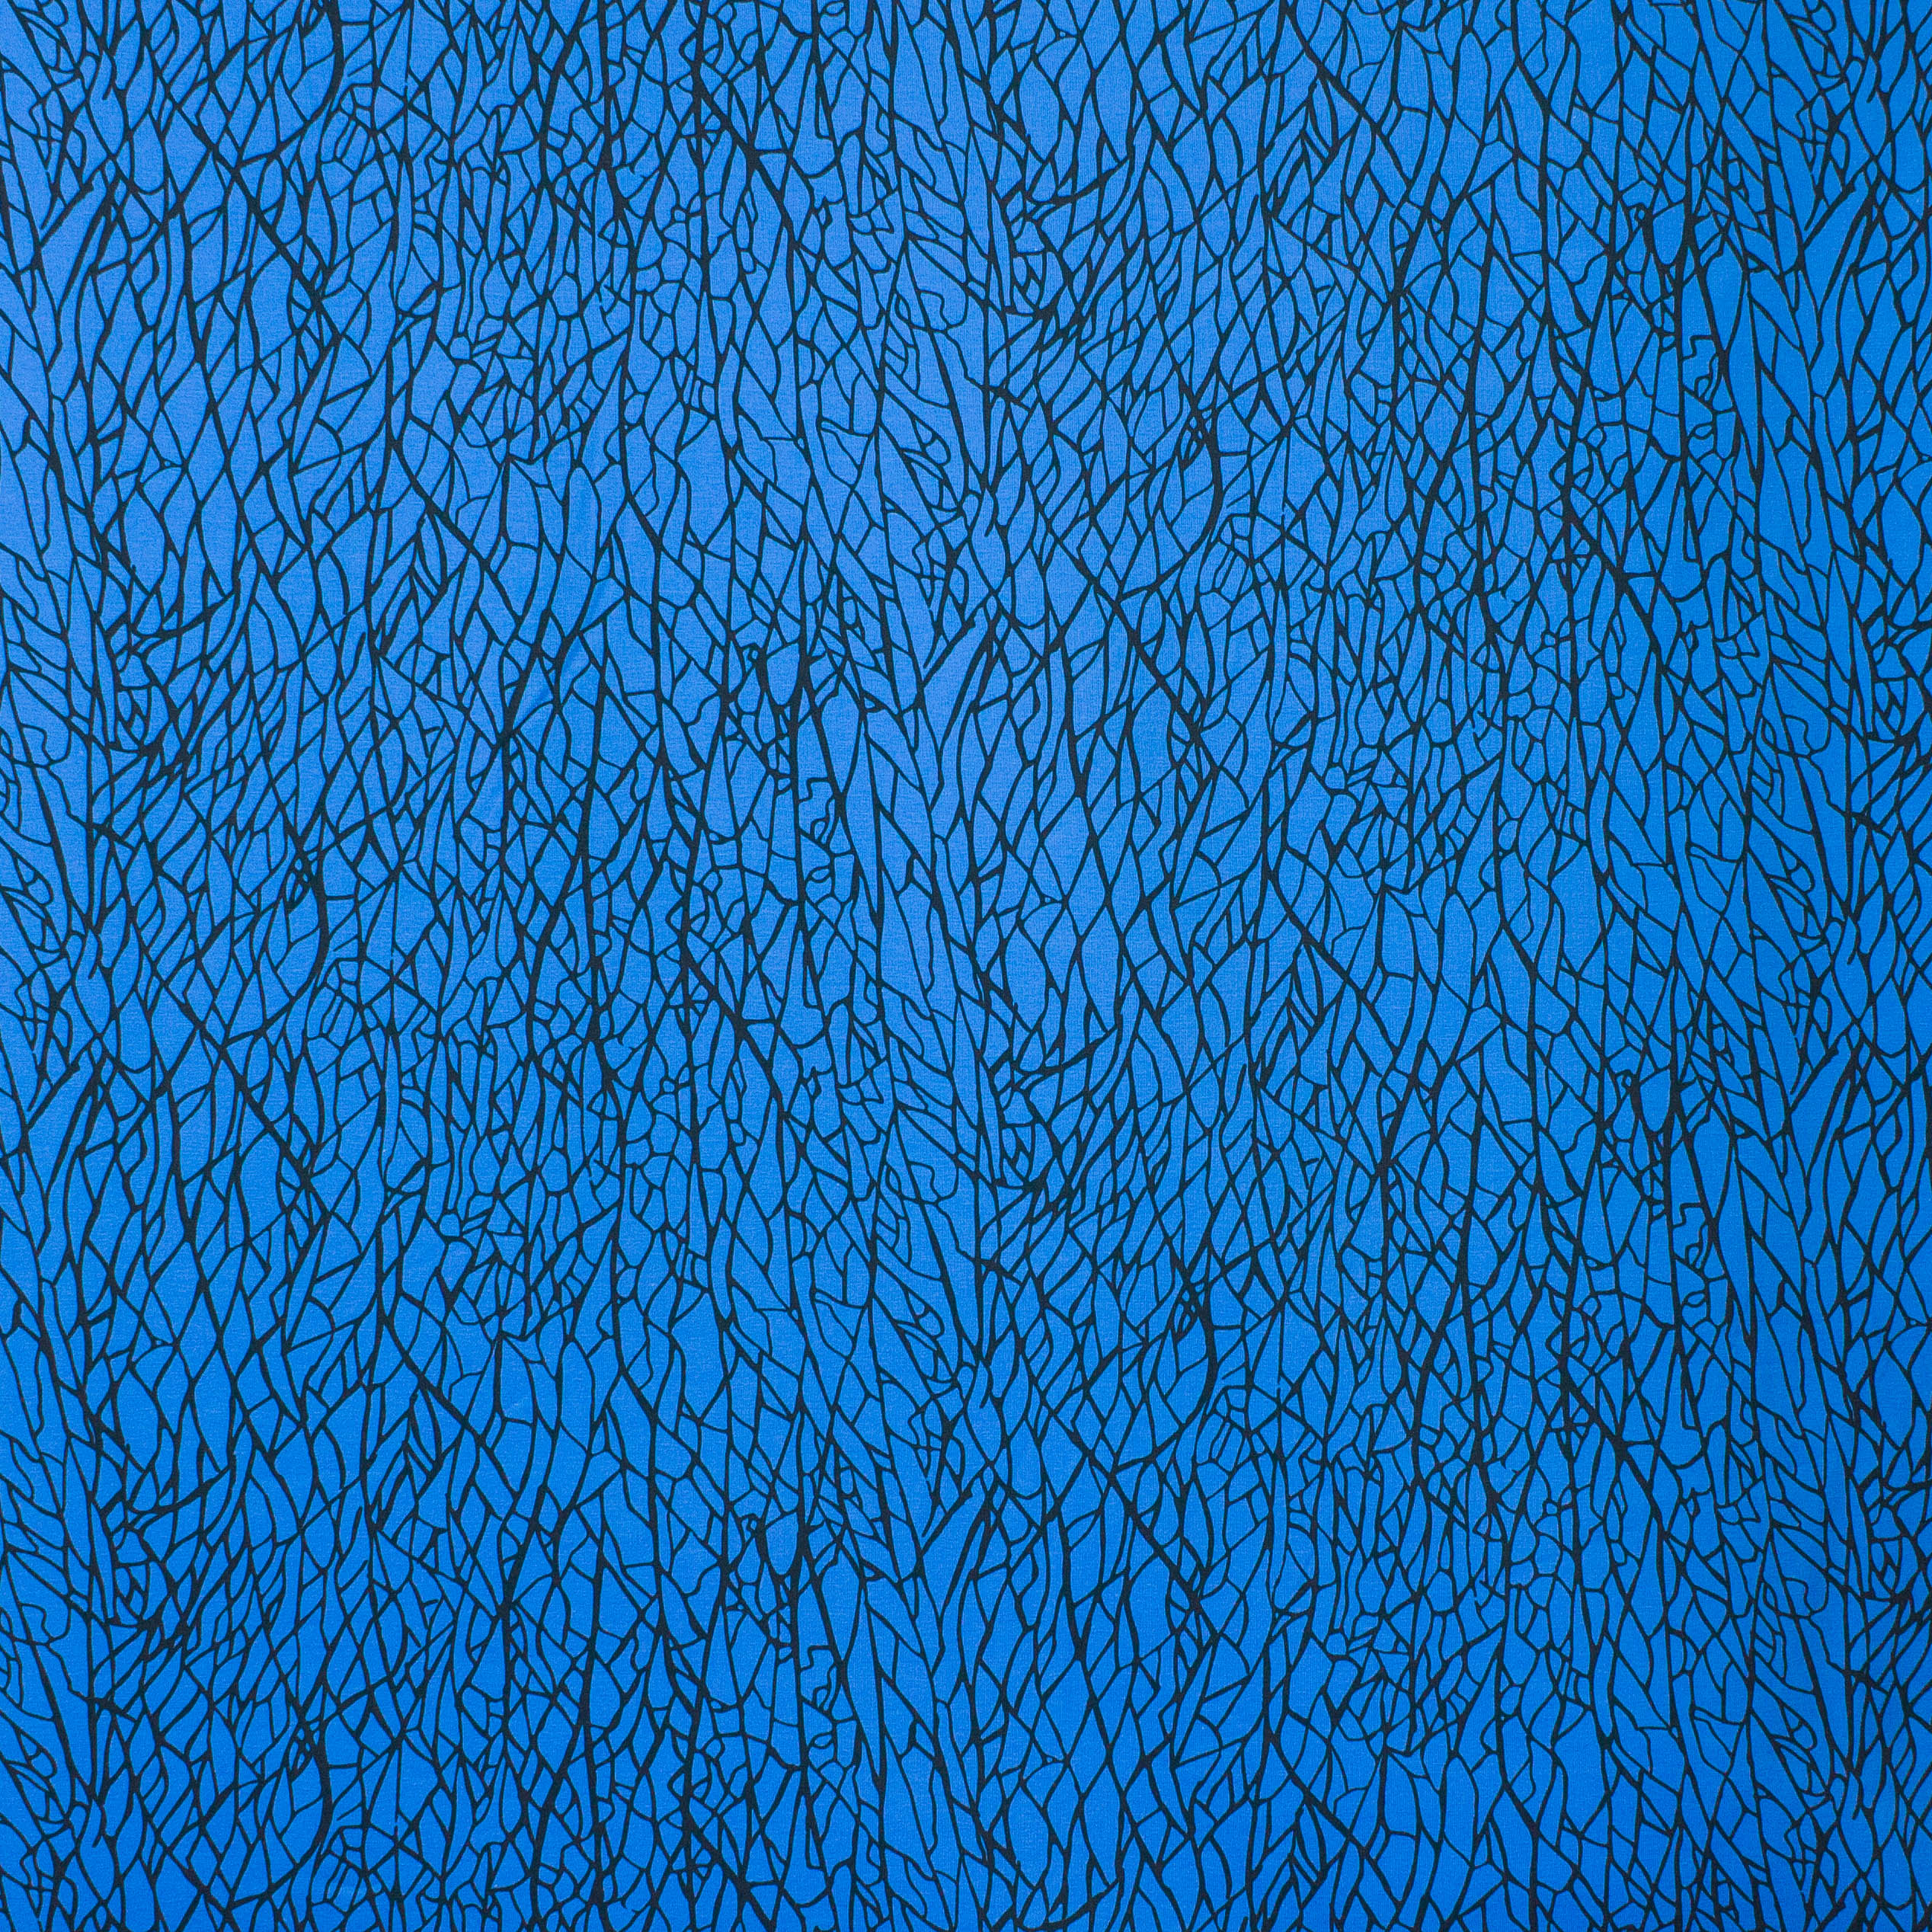 Blauwe french terry met zwarte lijnen - 'Veta' van Käselotti